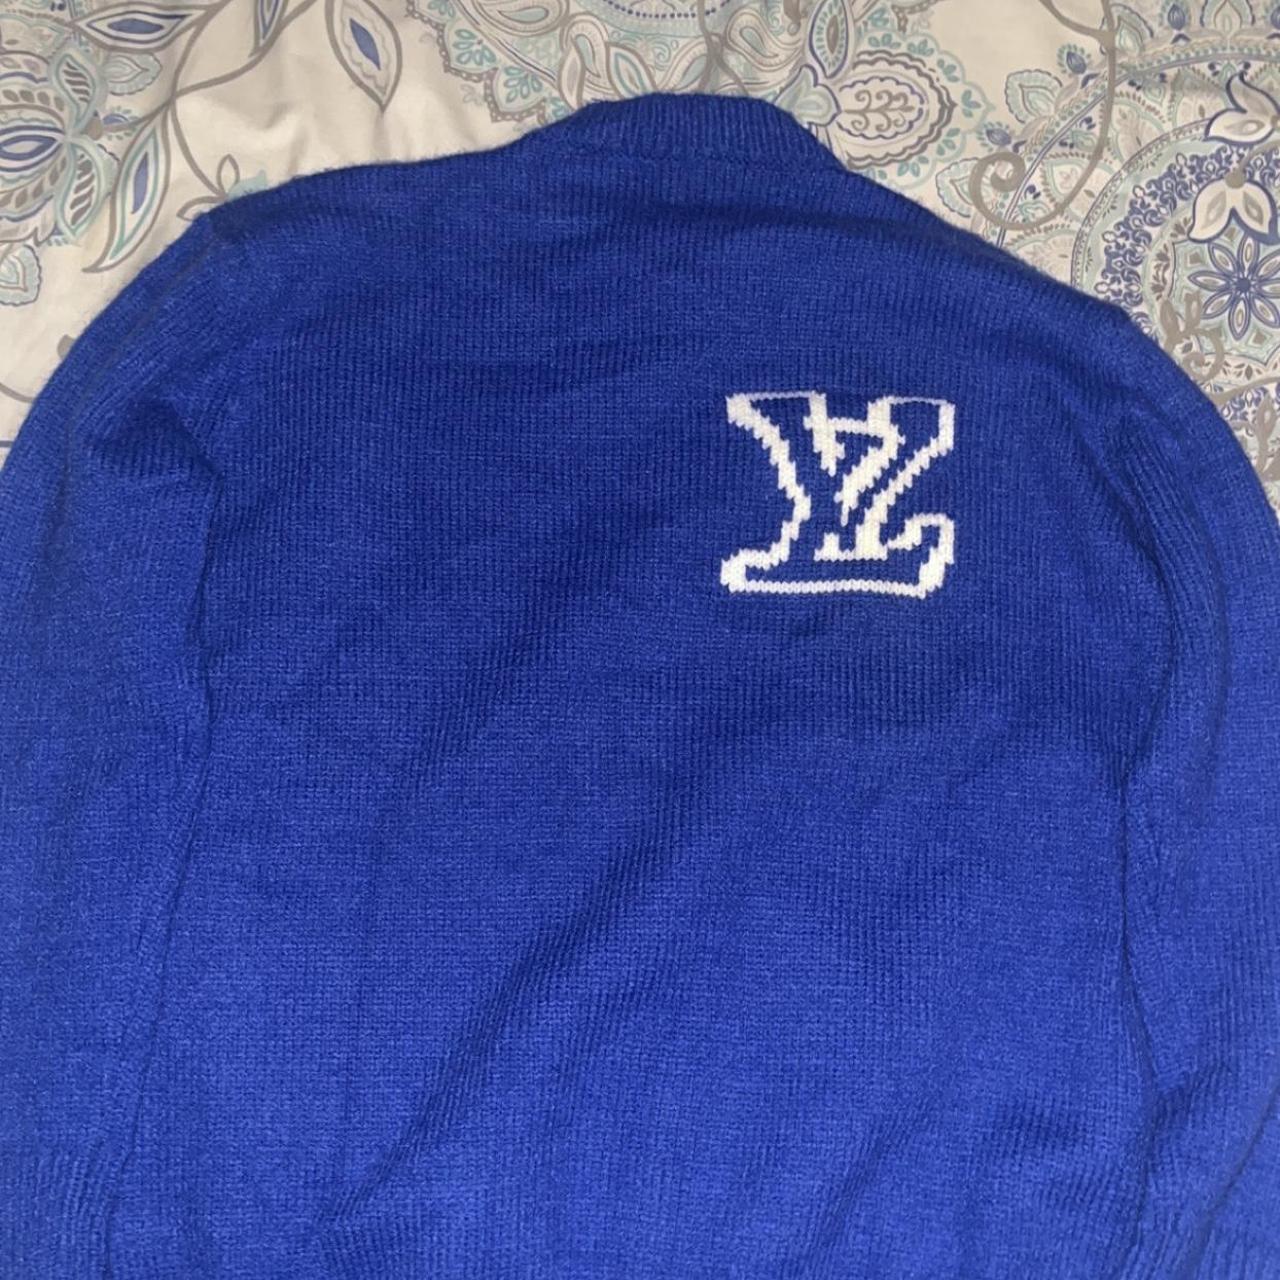 Louis Vuitton knit sweater size M Dm me offers - Depop